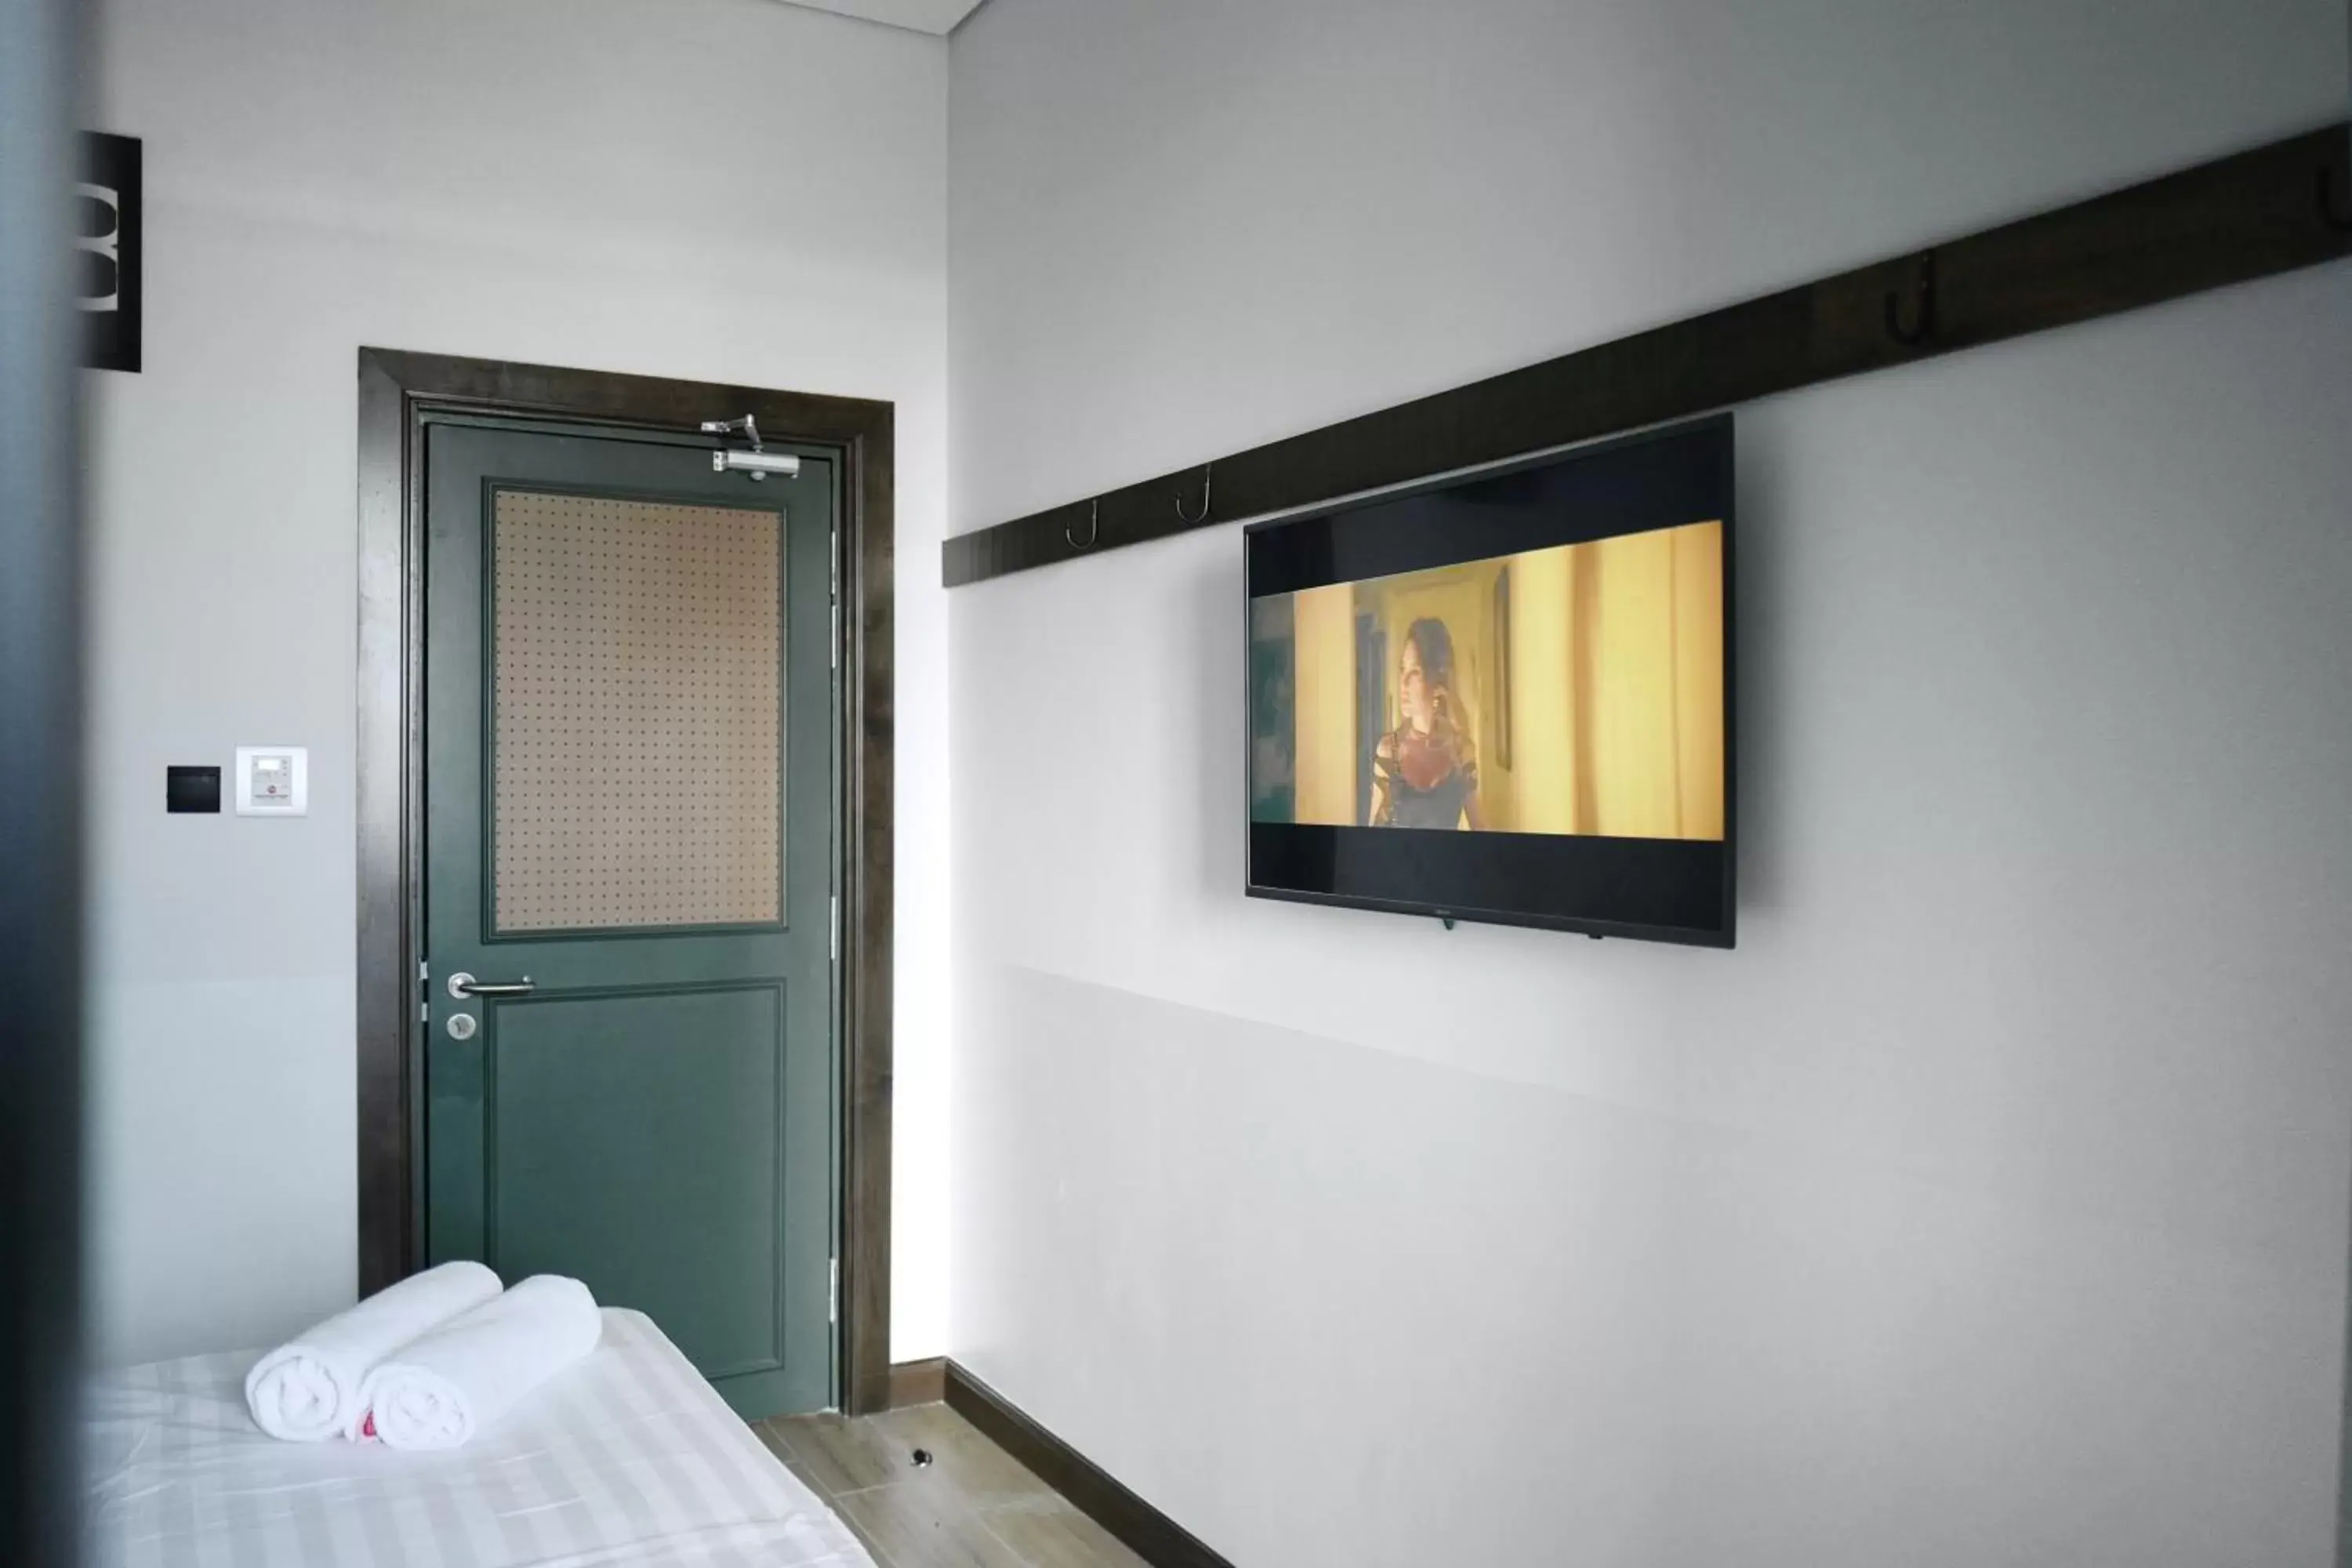 Bedroom, TV/Entertainment Center in Tune Hotel KLIA-KLIA2, Airport Transit Hotel